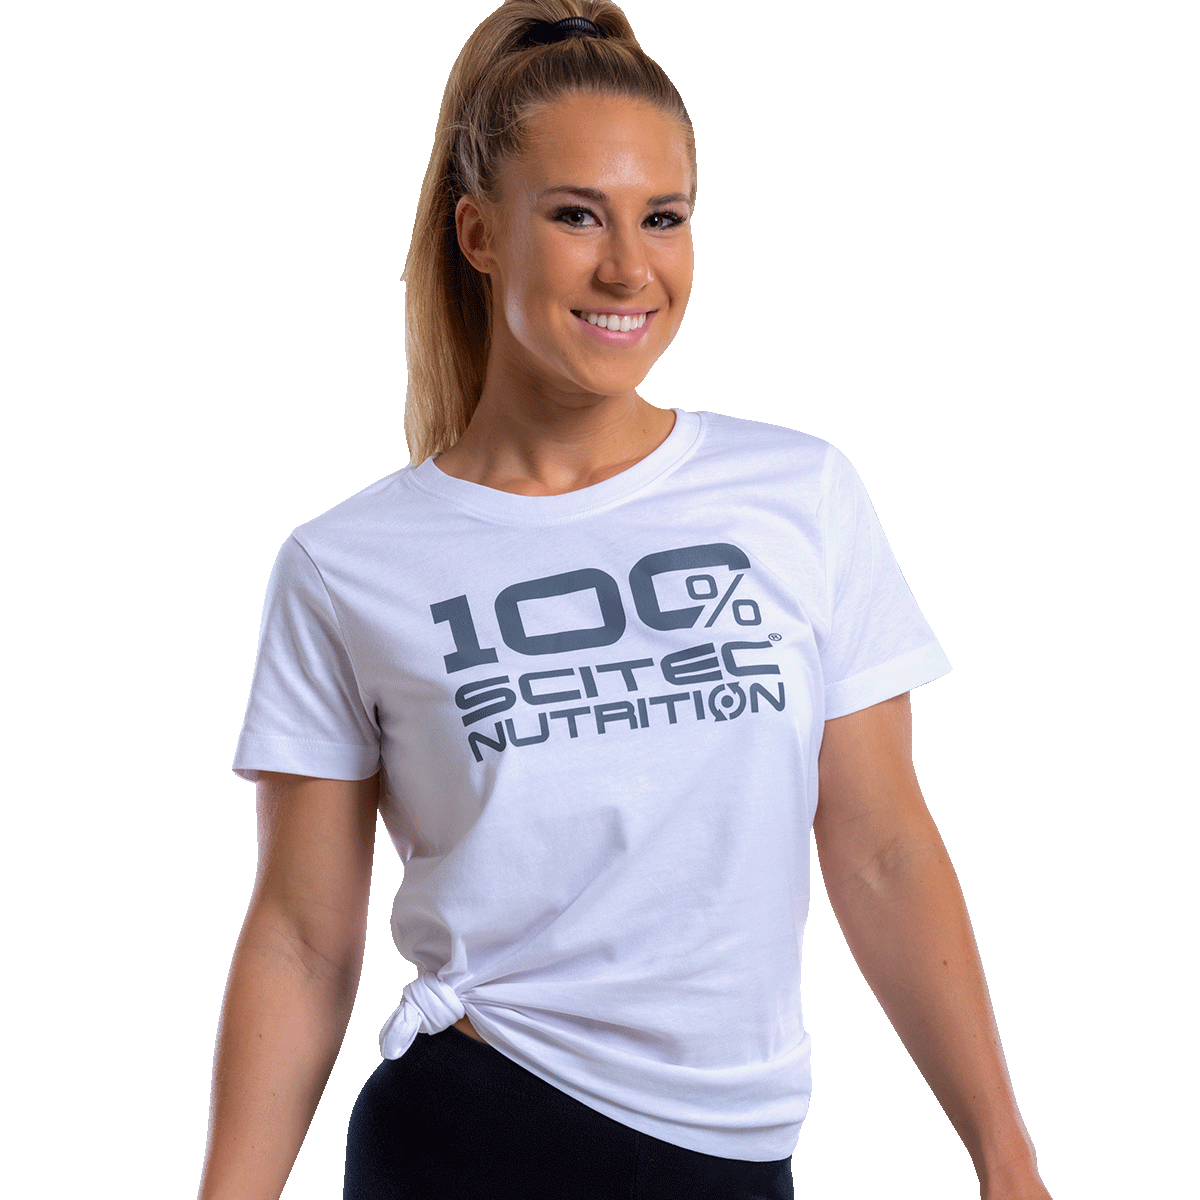 Scitec Nutrition 100% Scitec Nutrition női póló  